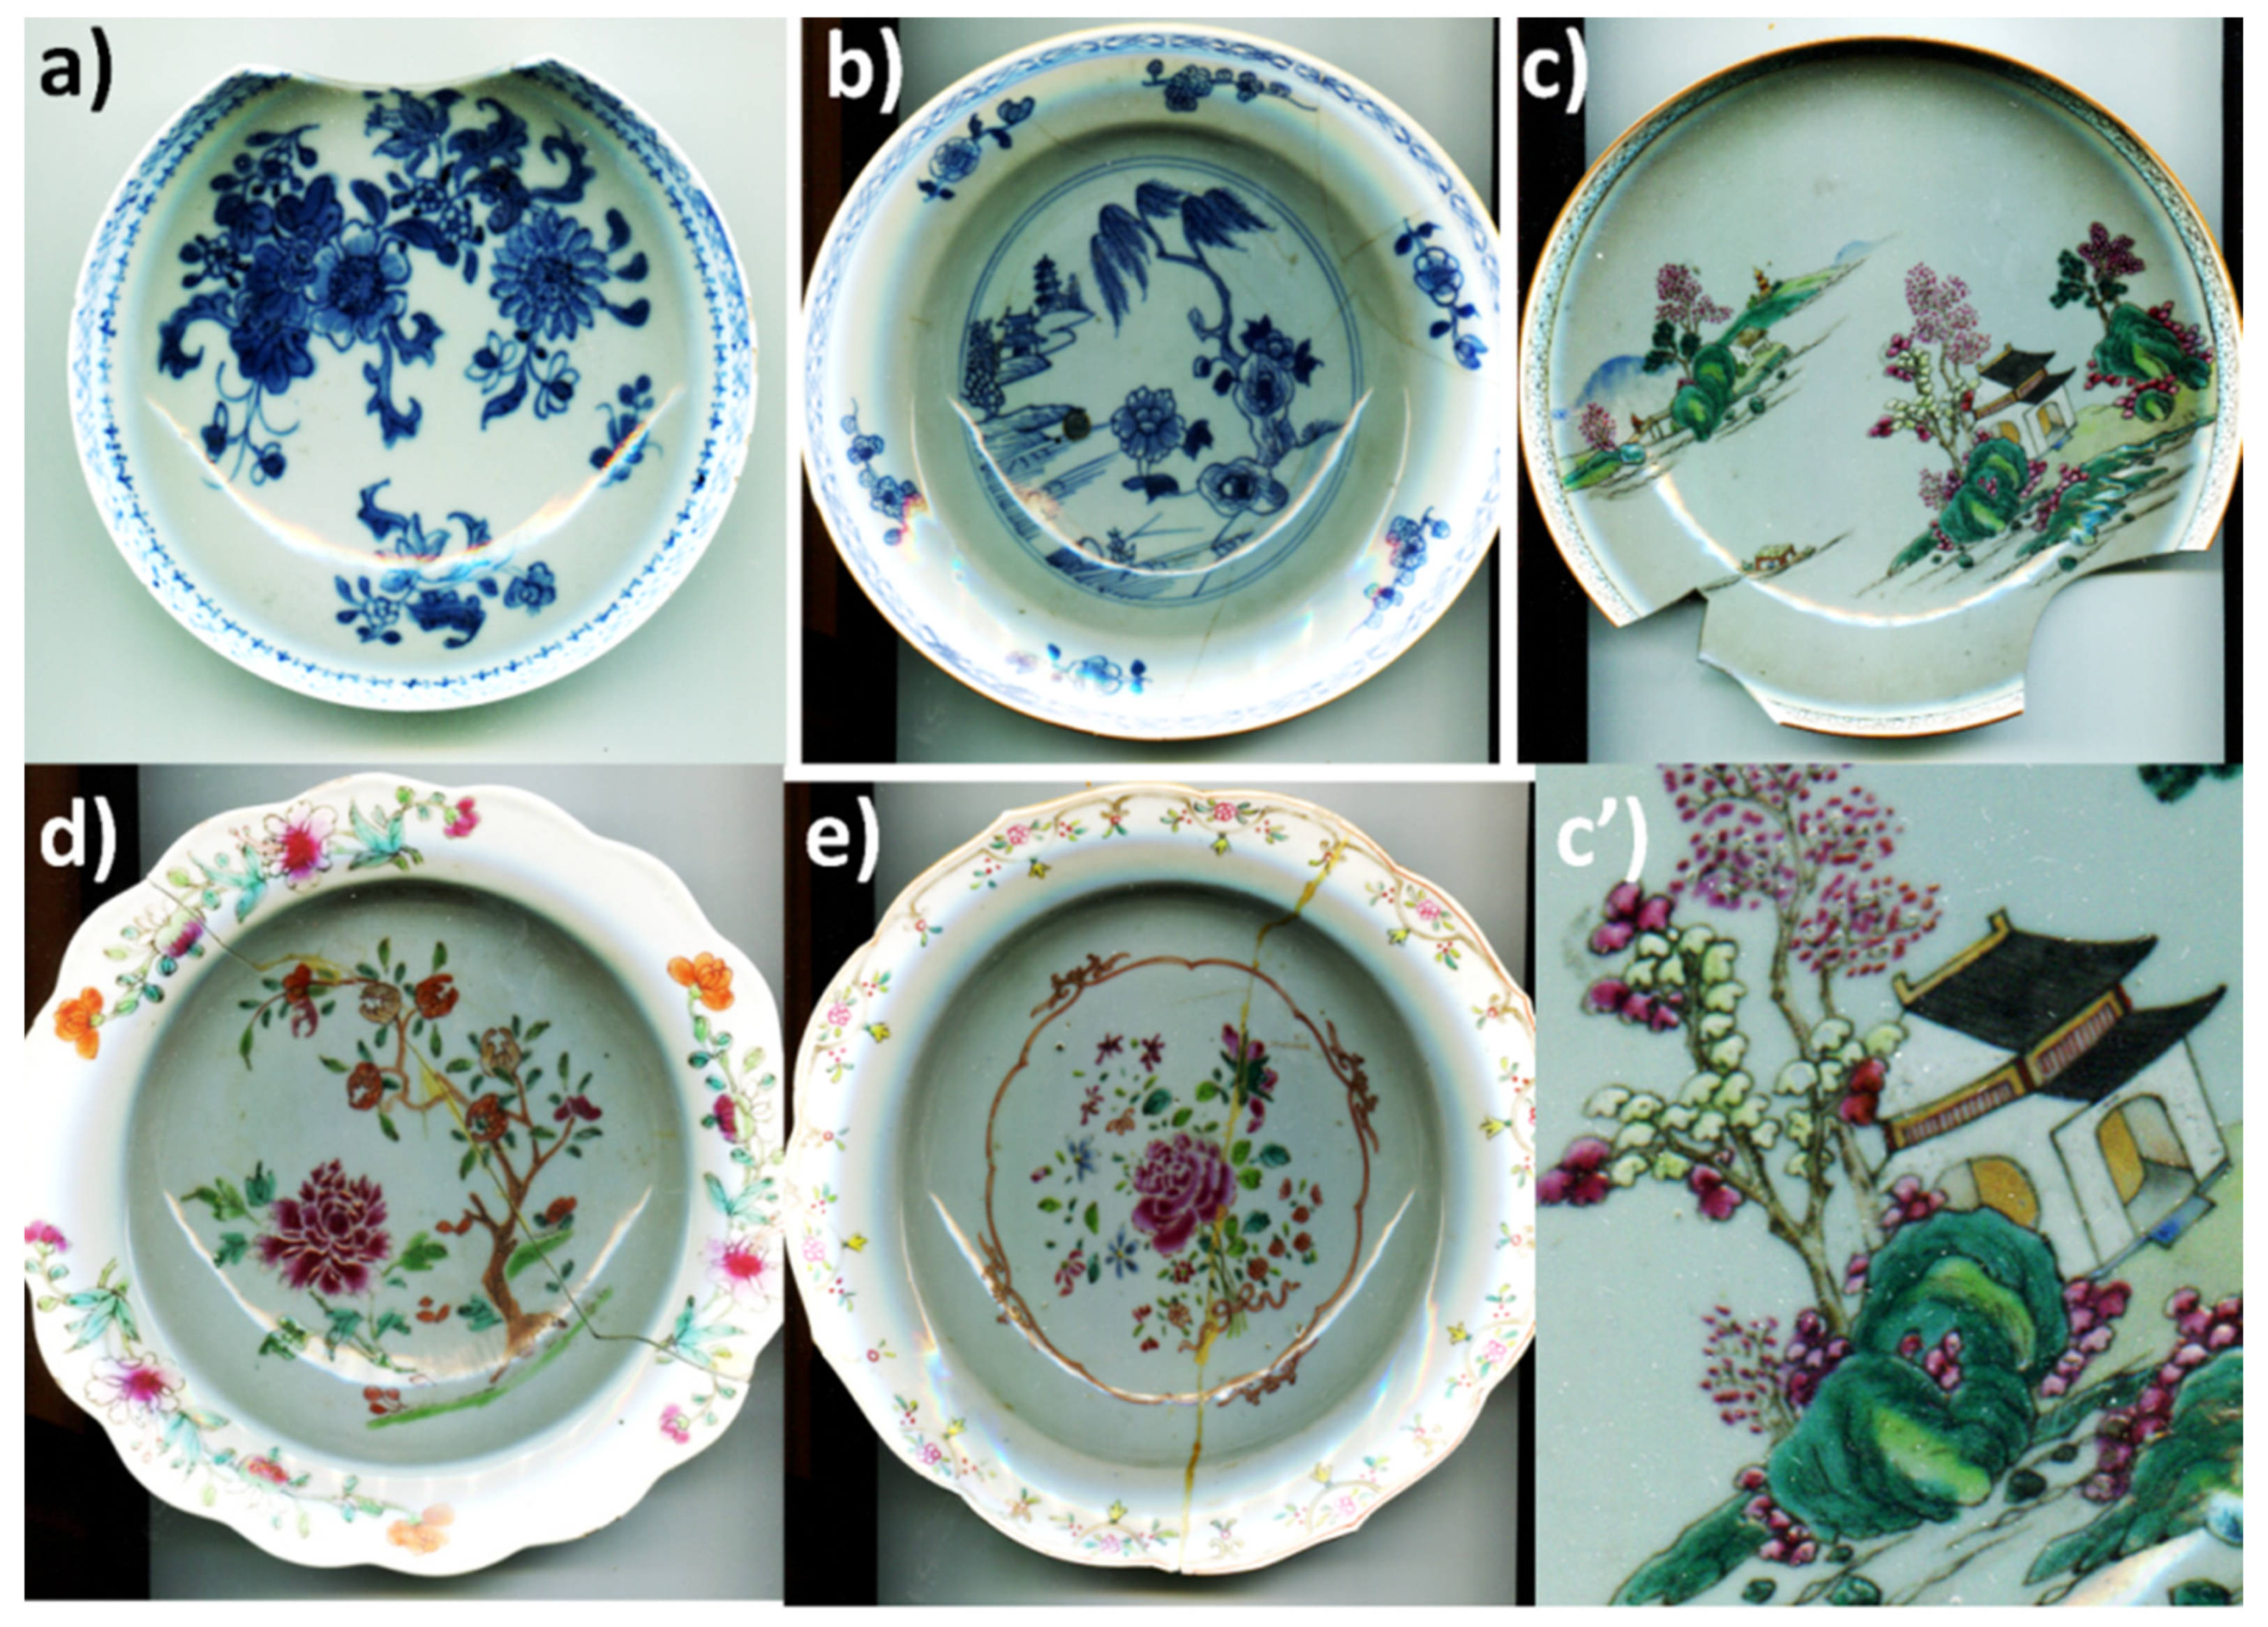 Beau Service de Table ancien en Porcelaine décor floral 36 assiettes ,  plats